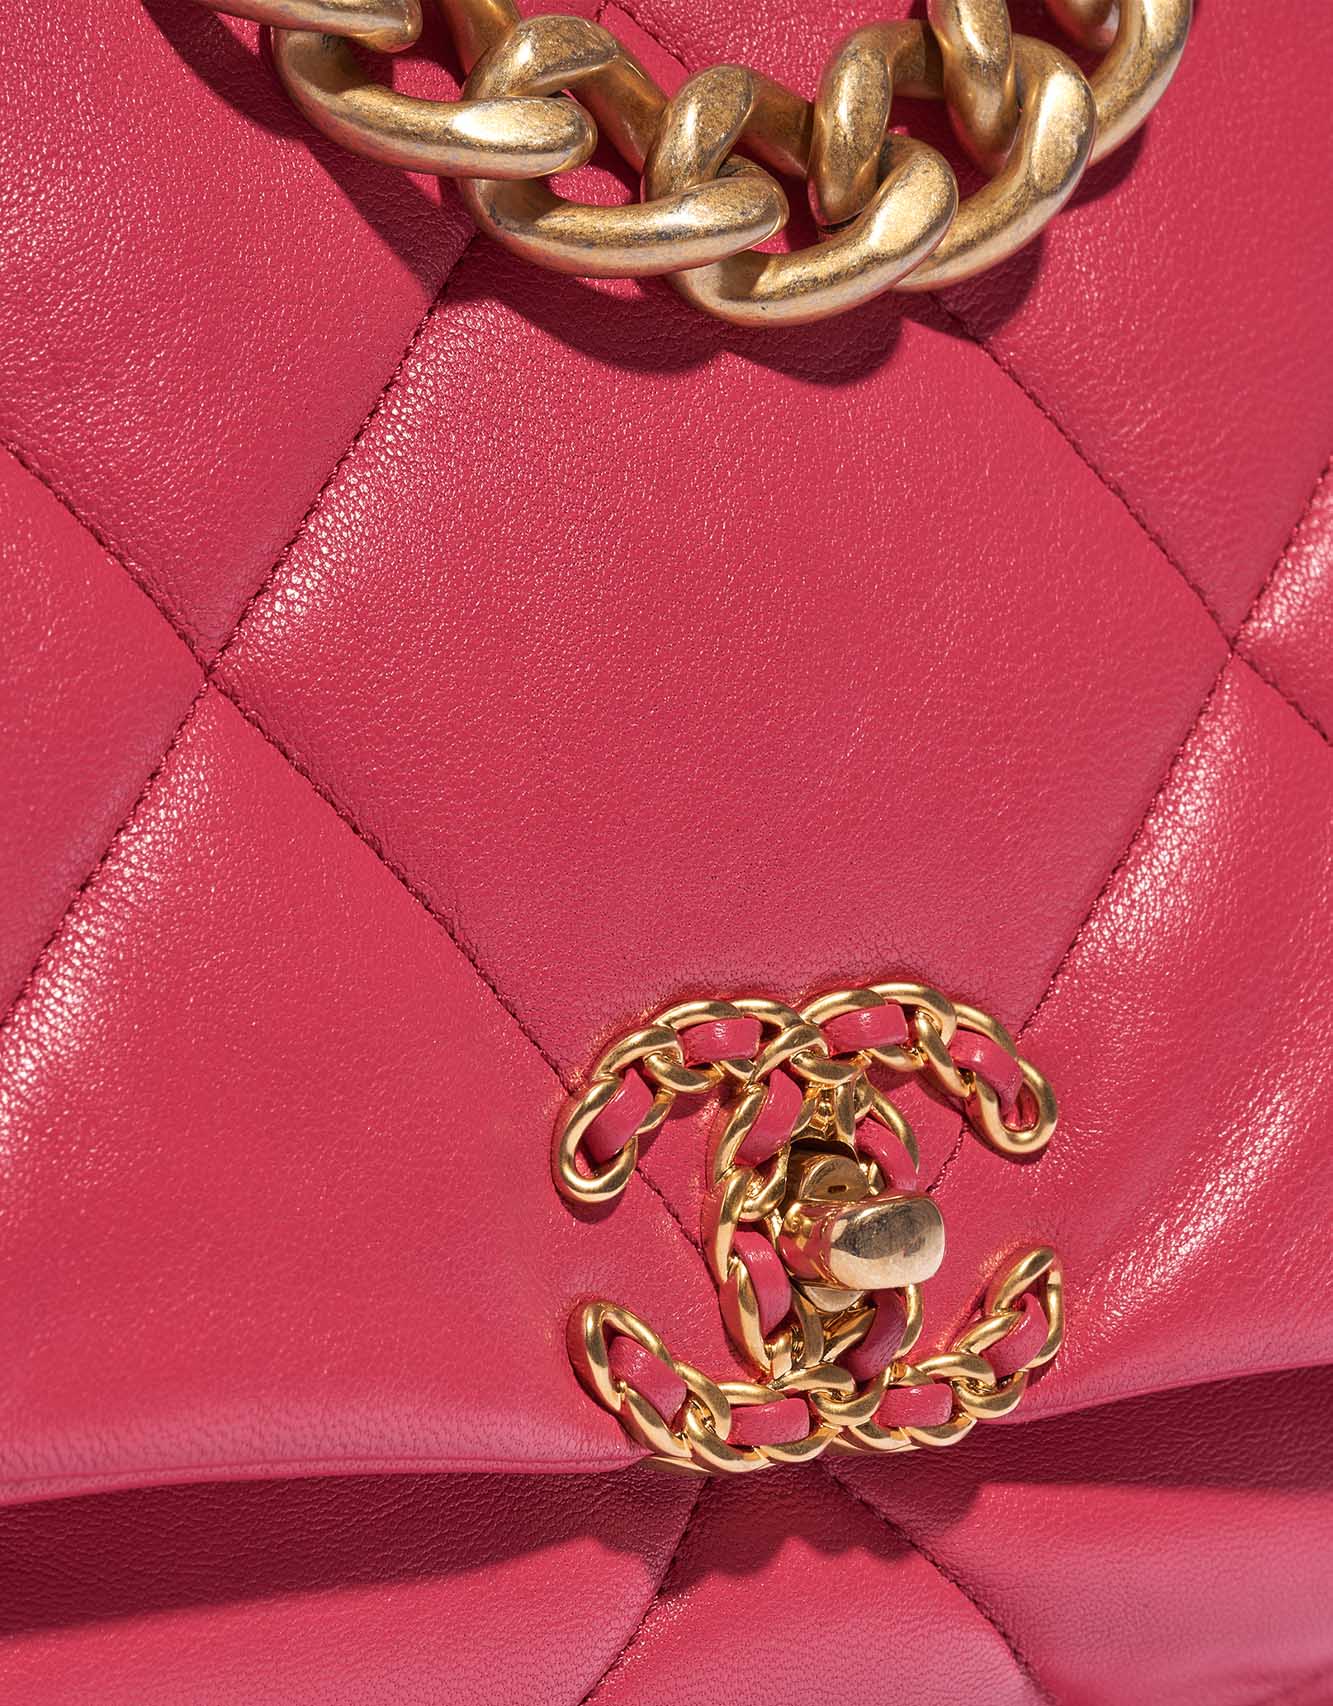 Gebrauchte Chanel Tasche 19 Maxi Flap Bag Lammleder Pink Pink Closing System | Verkaufen Sie Ihre Designer-Tasche auf Saclab.com